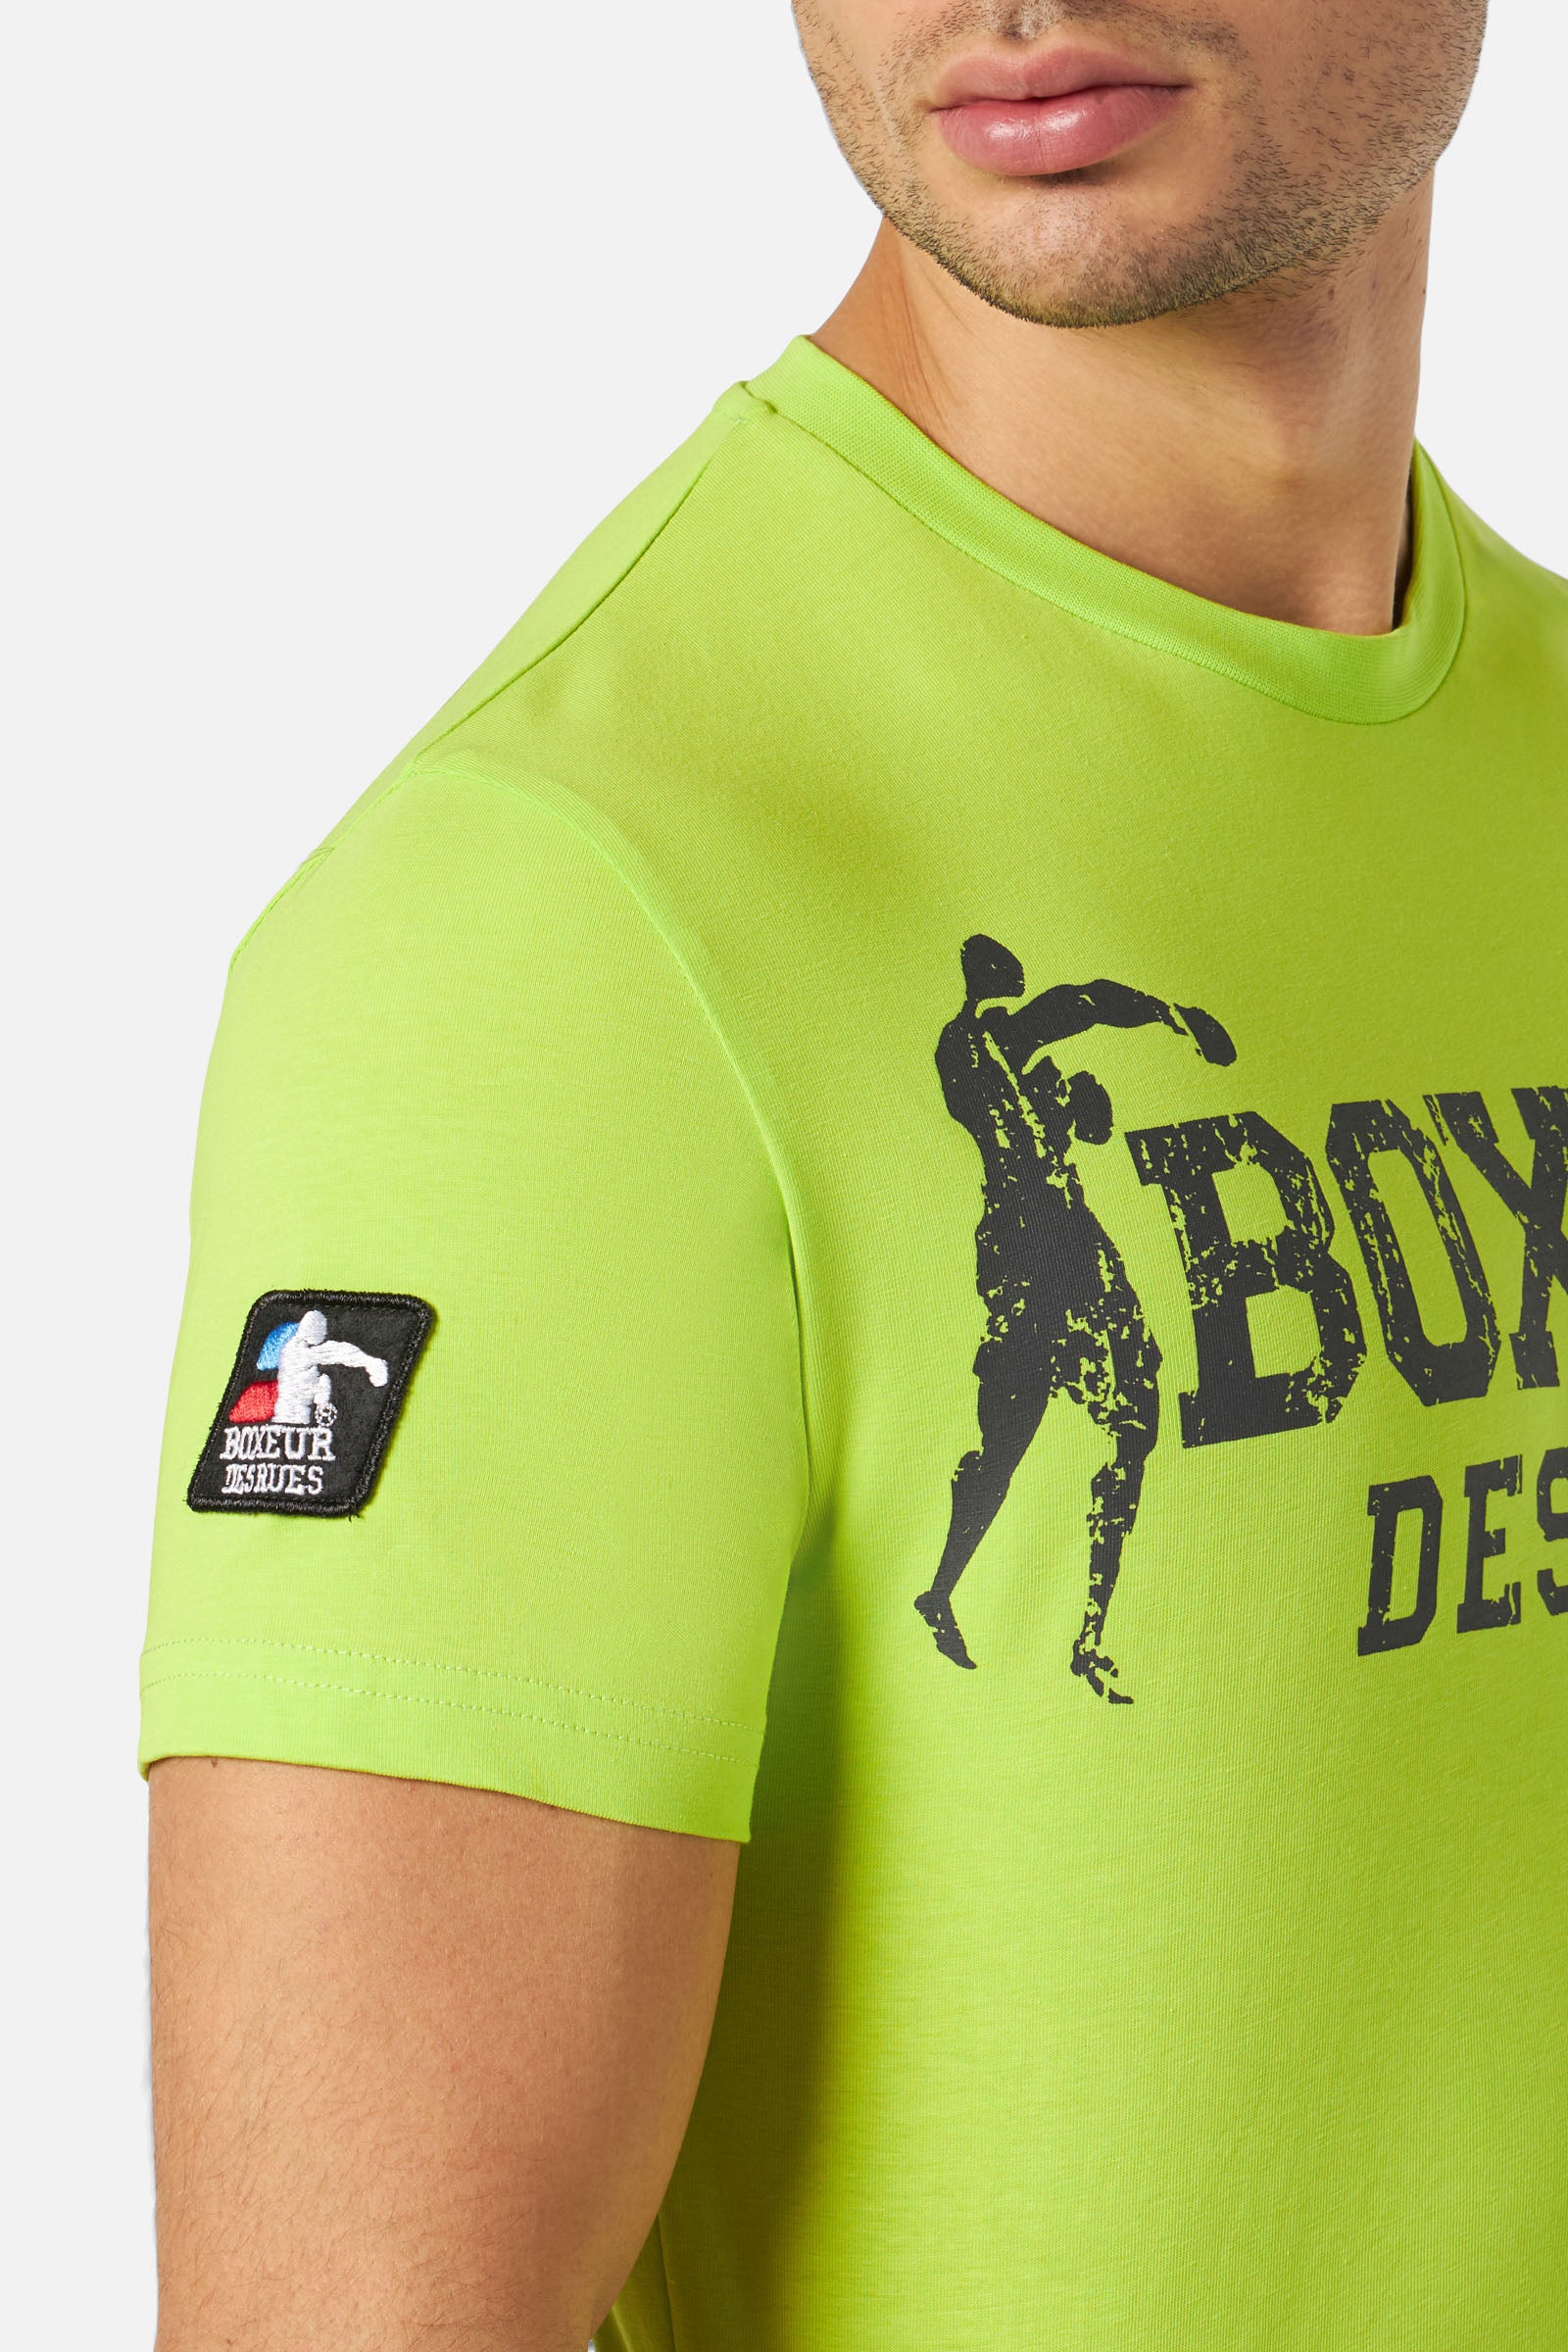 T-Shirt Boxeur Street 2 in Lime T-Shirts Boxeur des Rues   